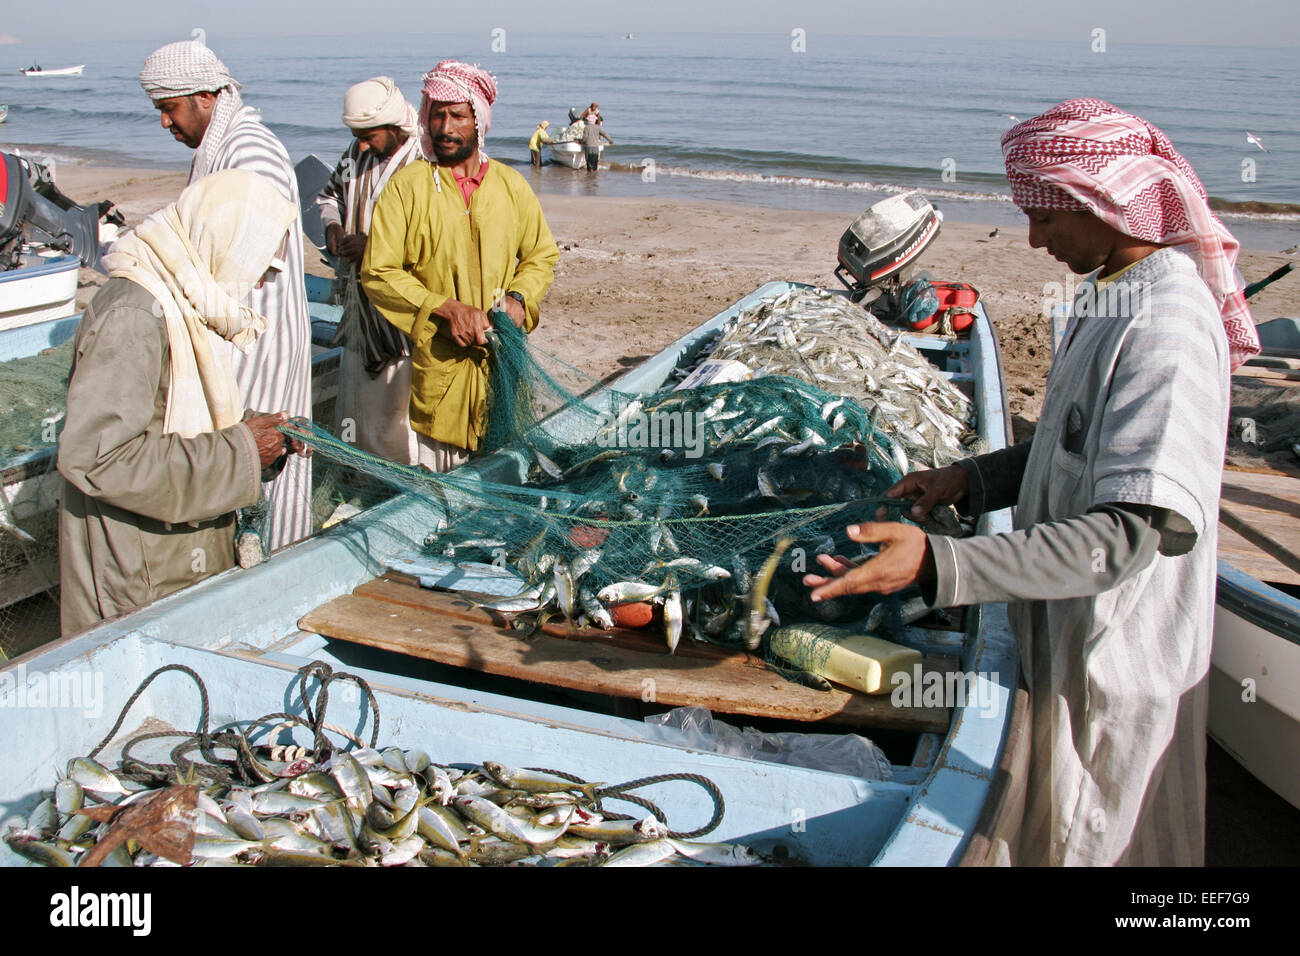 Sultanat Oman Reisen Barka Batinah Strand Fischer Erfolgreich Fang Anbieten Verkaufen Region Kuestenregion Menschen Einheimische Stock Photo